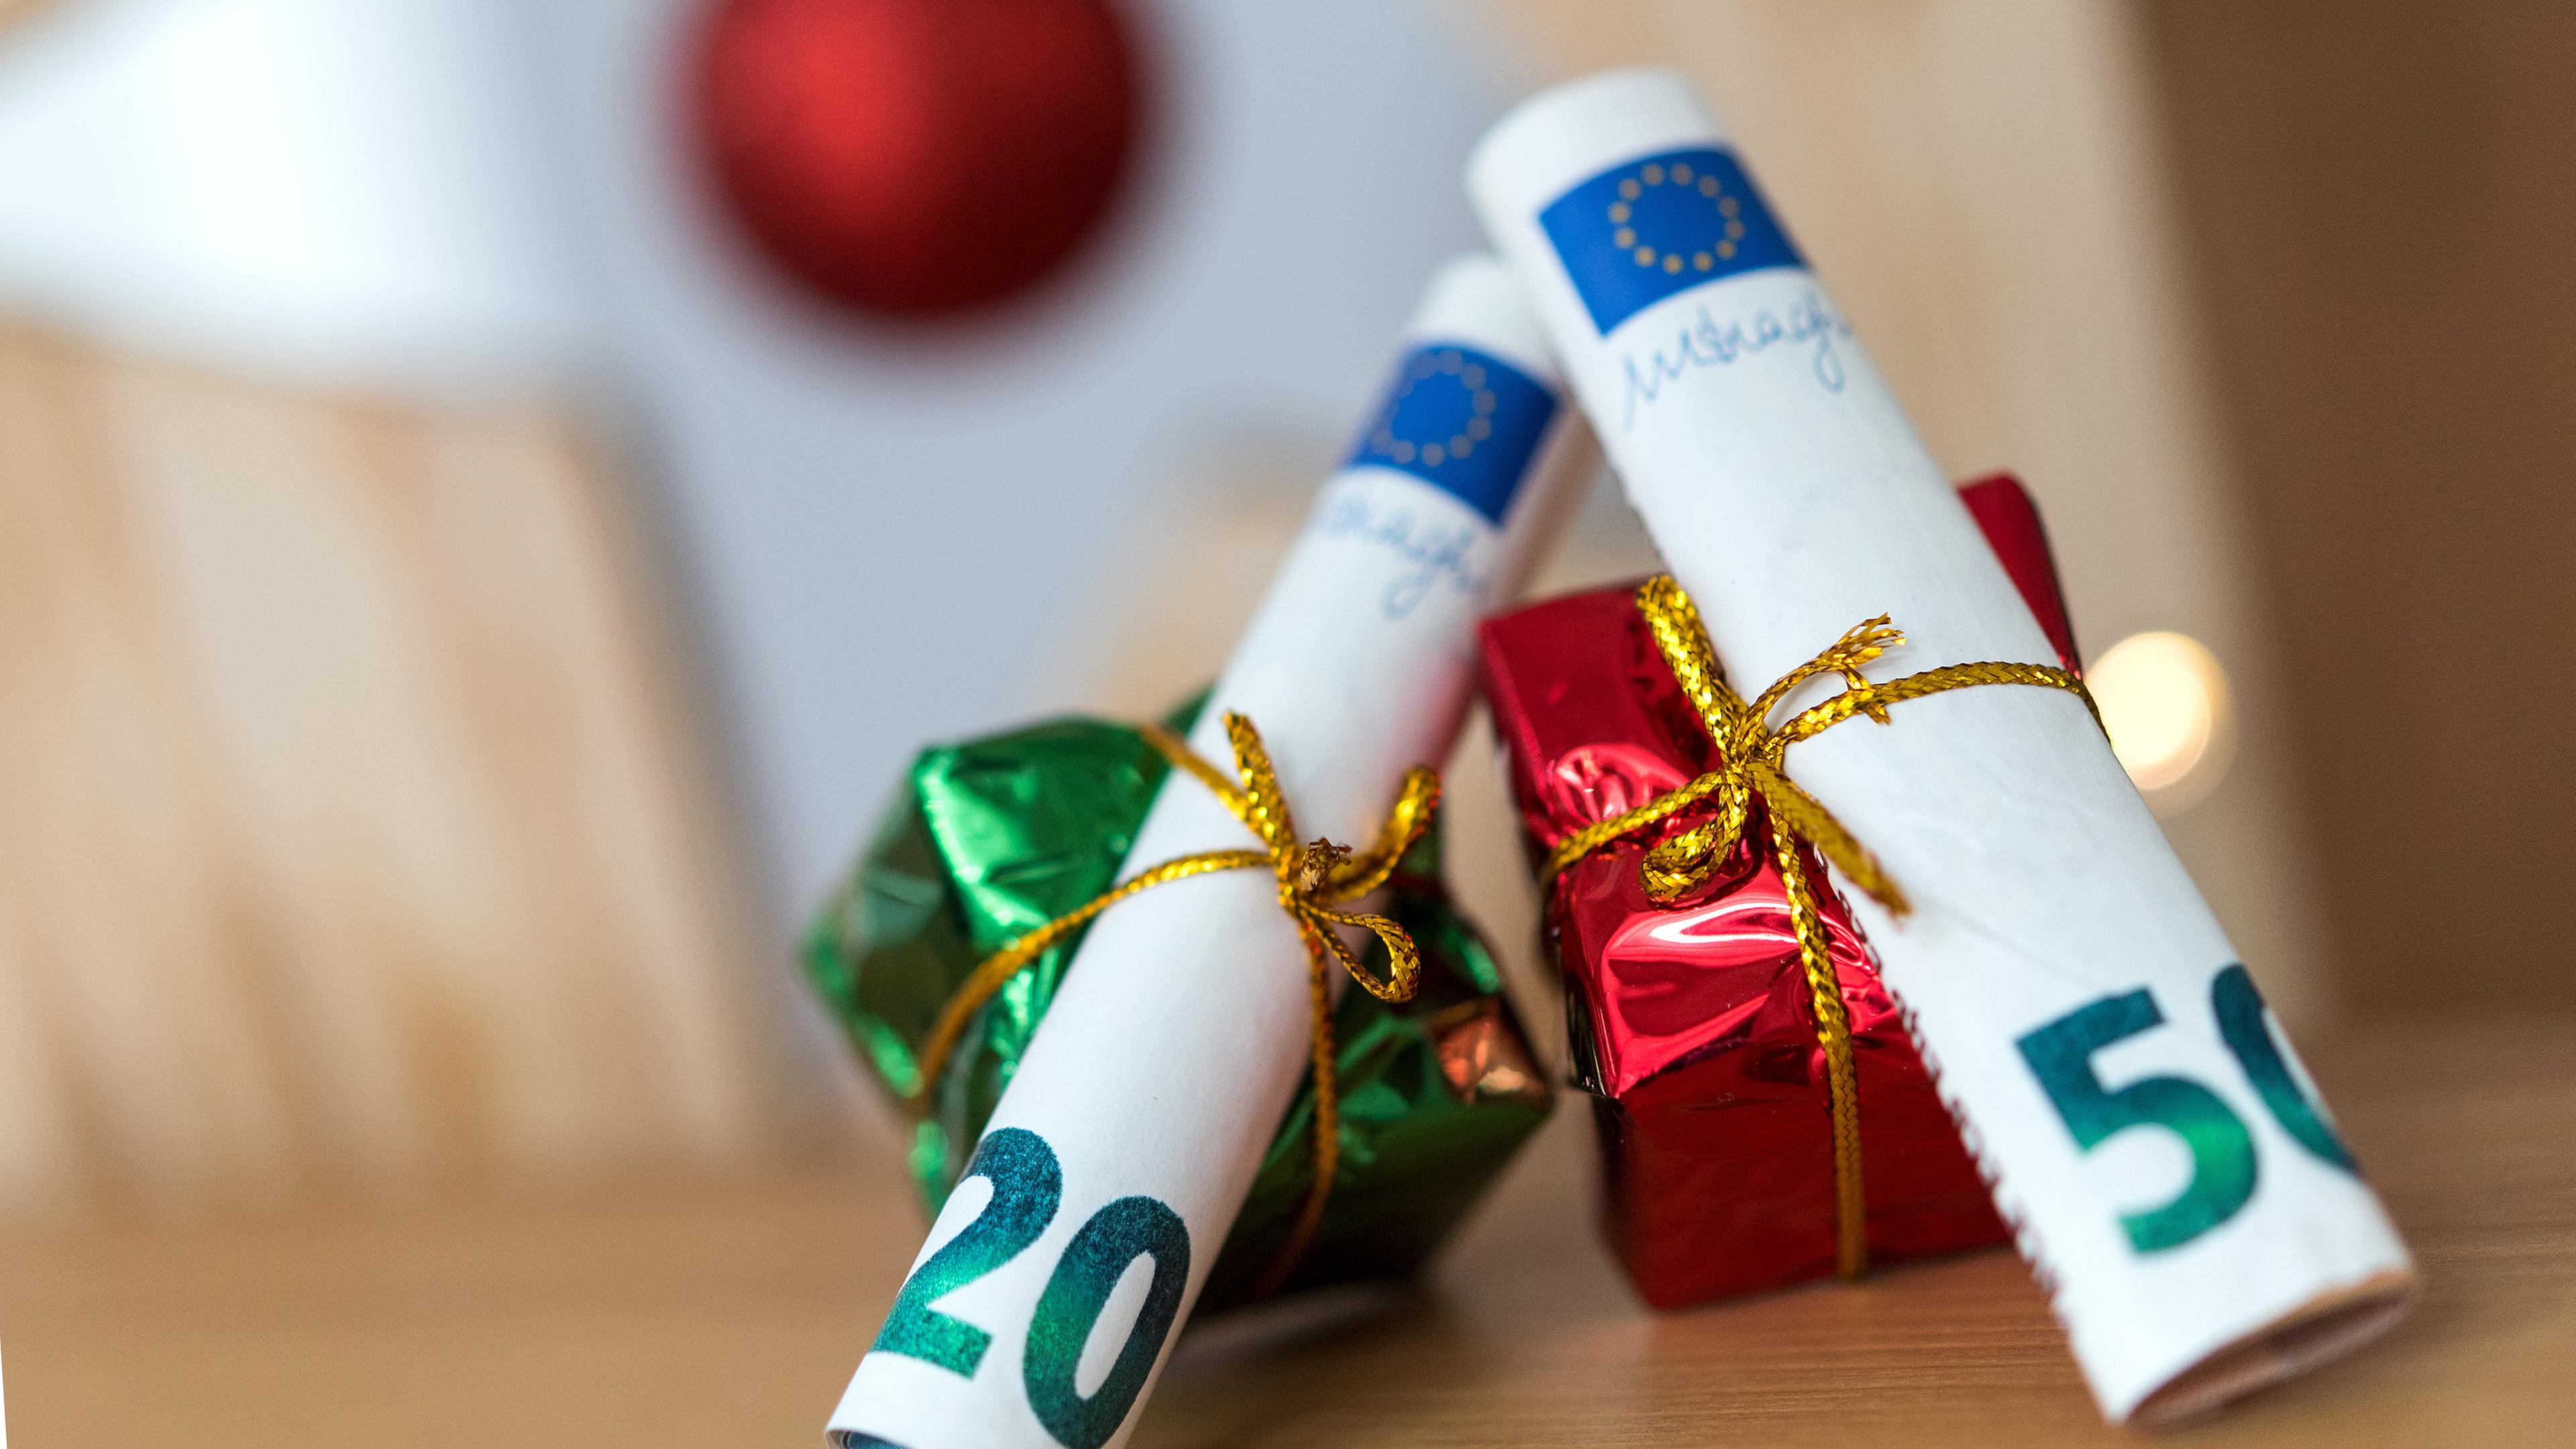 Als Geschenk verpackte 20 und 50 Euro Banknoten liegen auf einem Tisch, aufgenommen am 04.12.2018